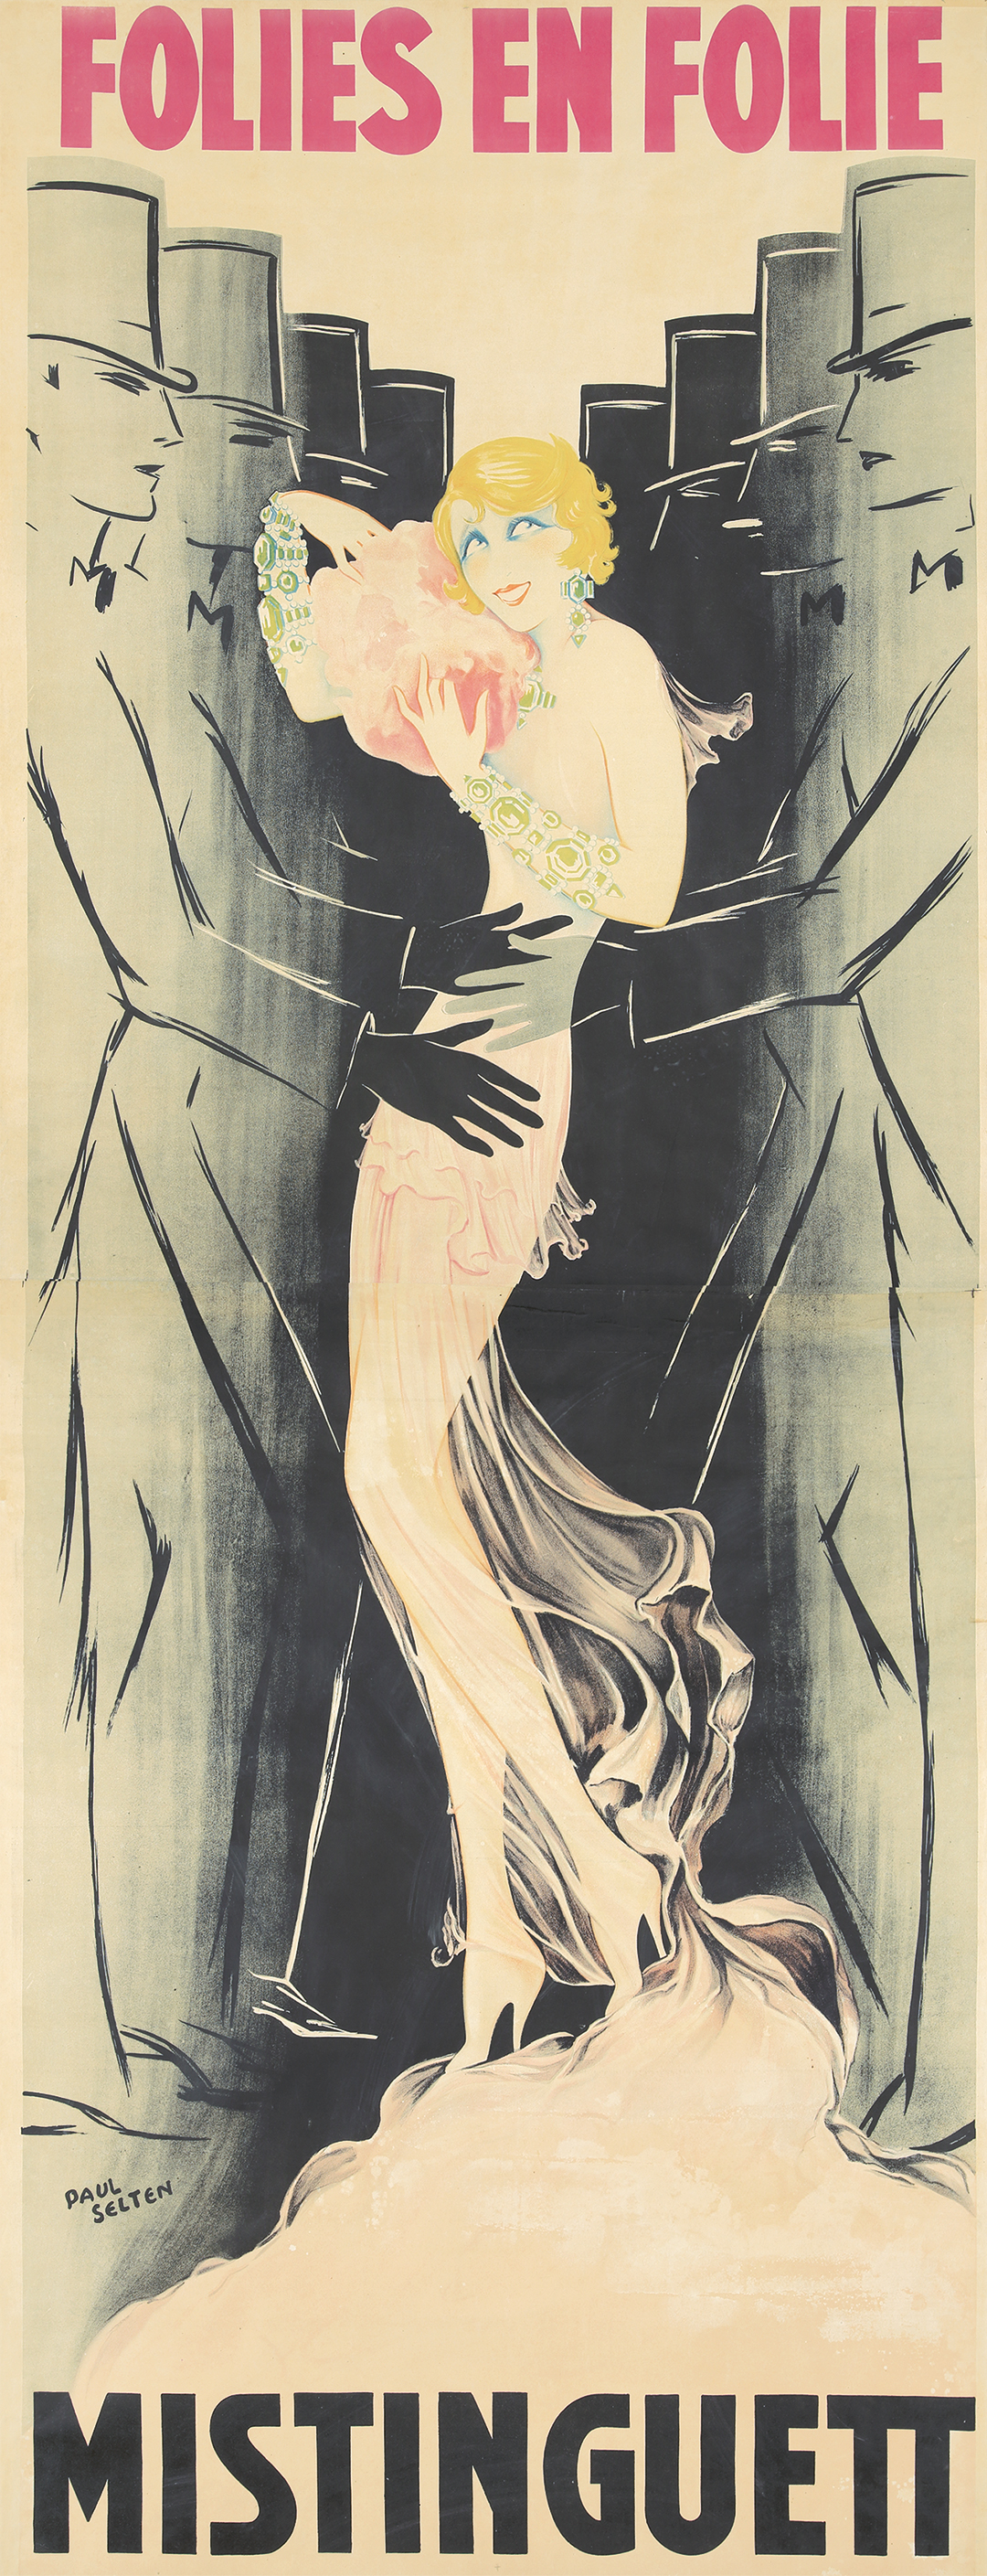 Folies-Bergère / Folies en Folie / Mistinguett. 1933. | Rennert's 